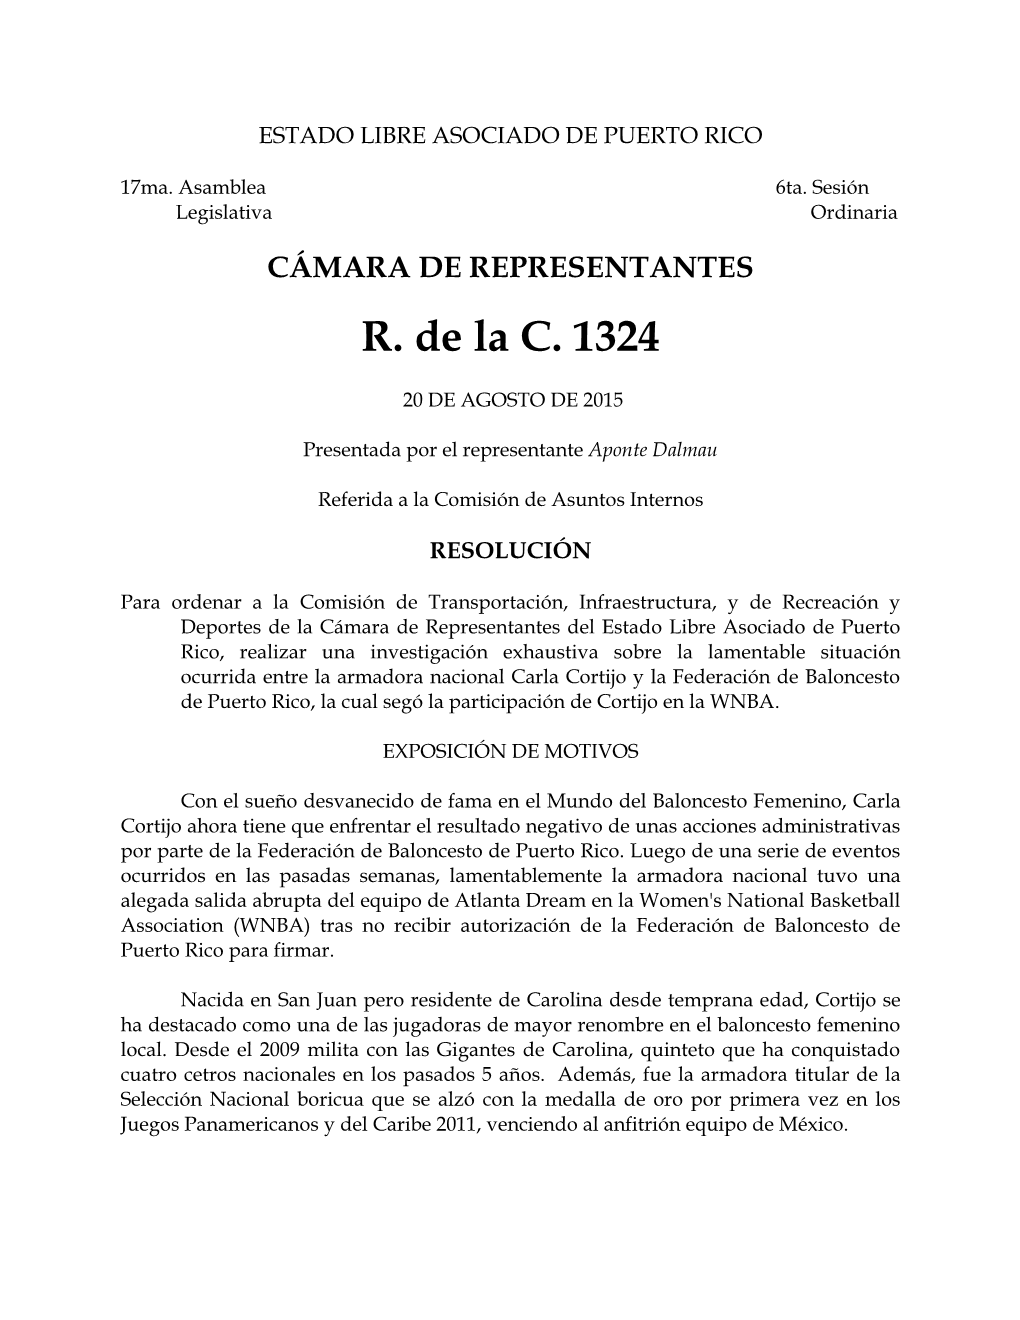 CÁMARA DE REPRESENTANTES R. De La C. 1324